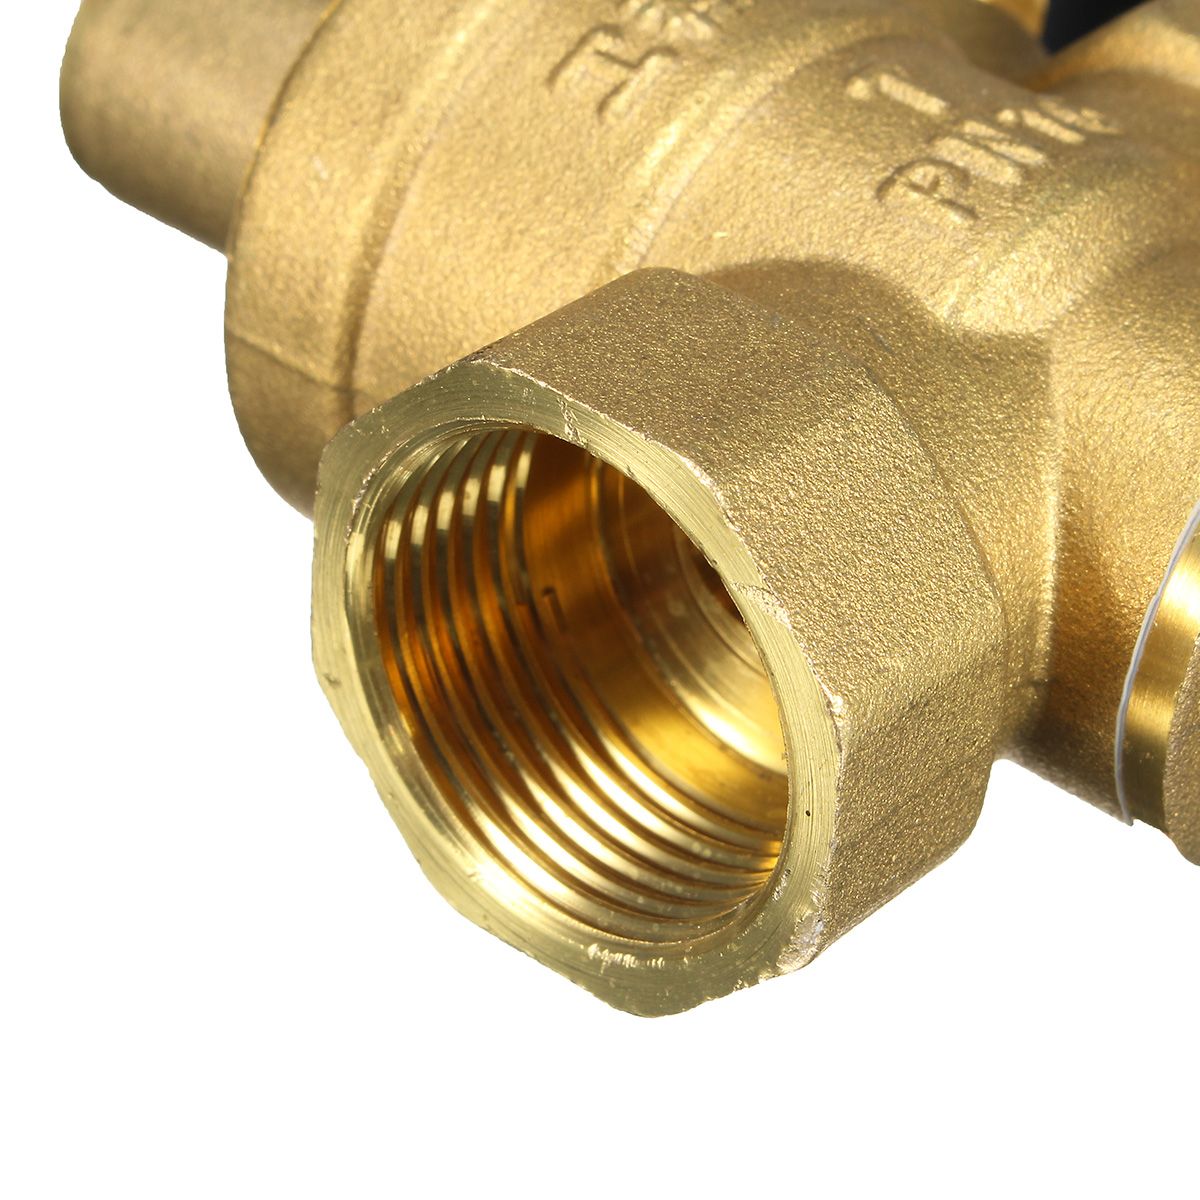 DN20-NPT-34quot-Adjustable-Brass-Water-Pressure-Regulator-Reducer-with-Gauge-Meter-1135674